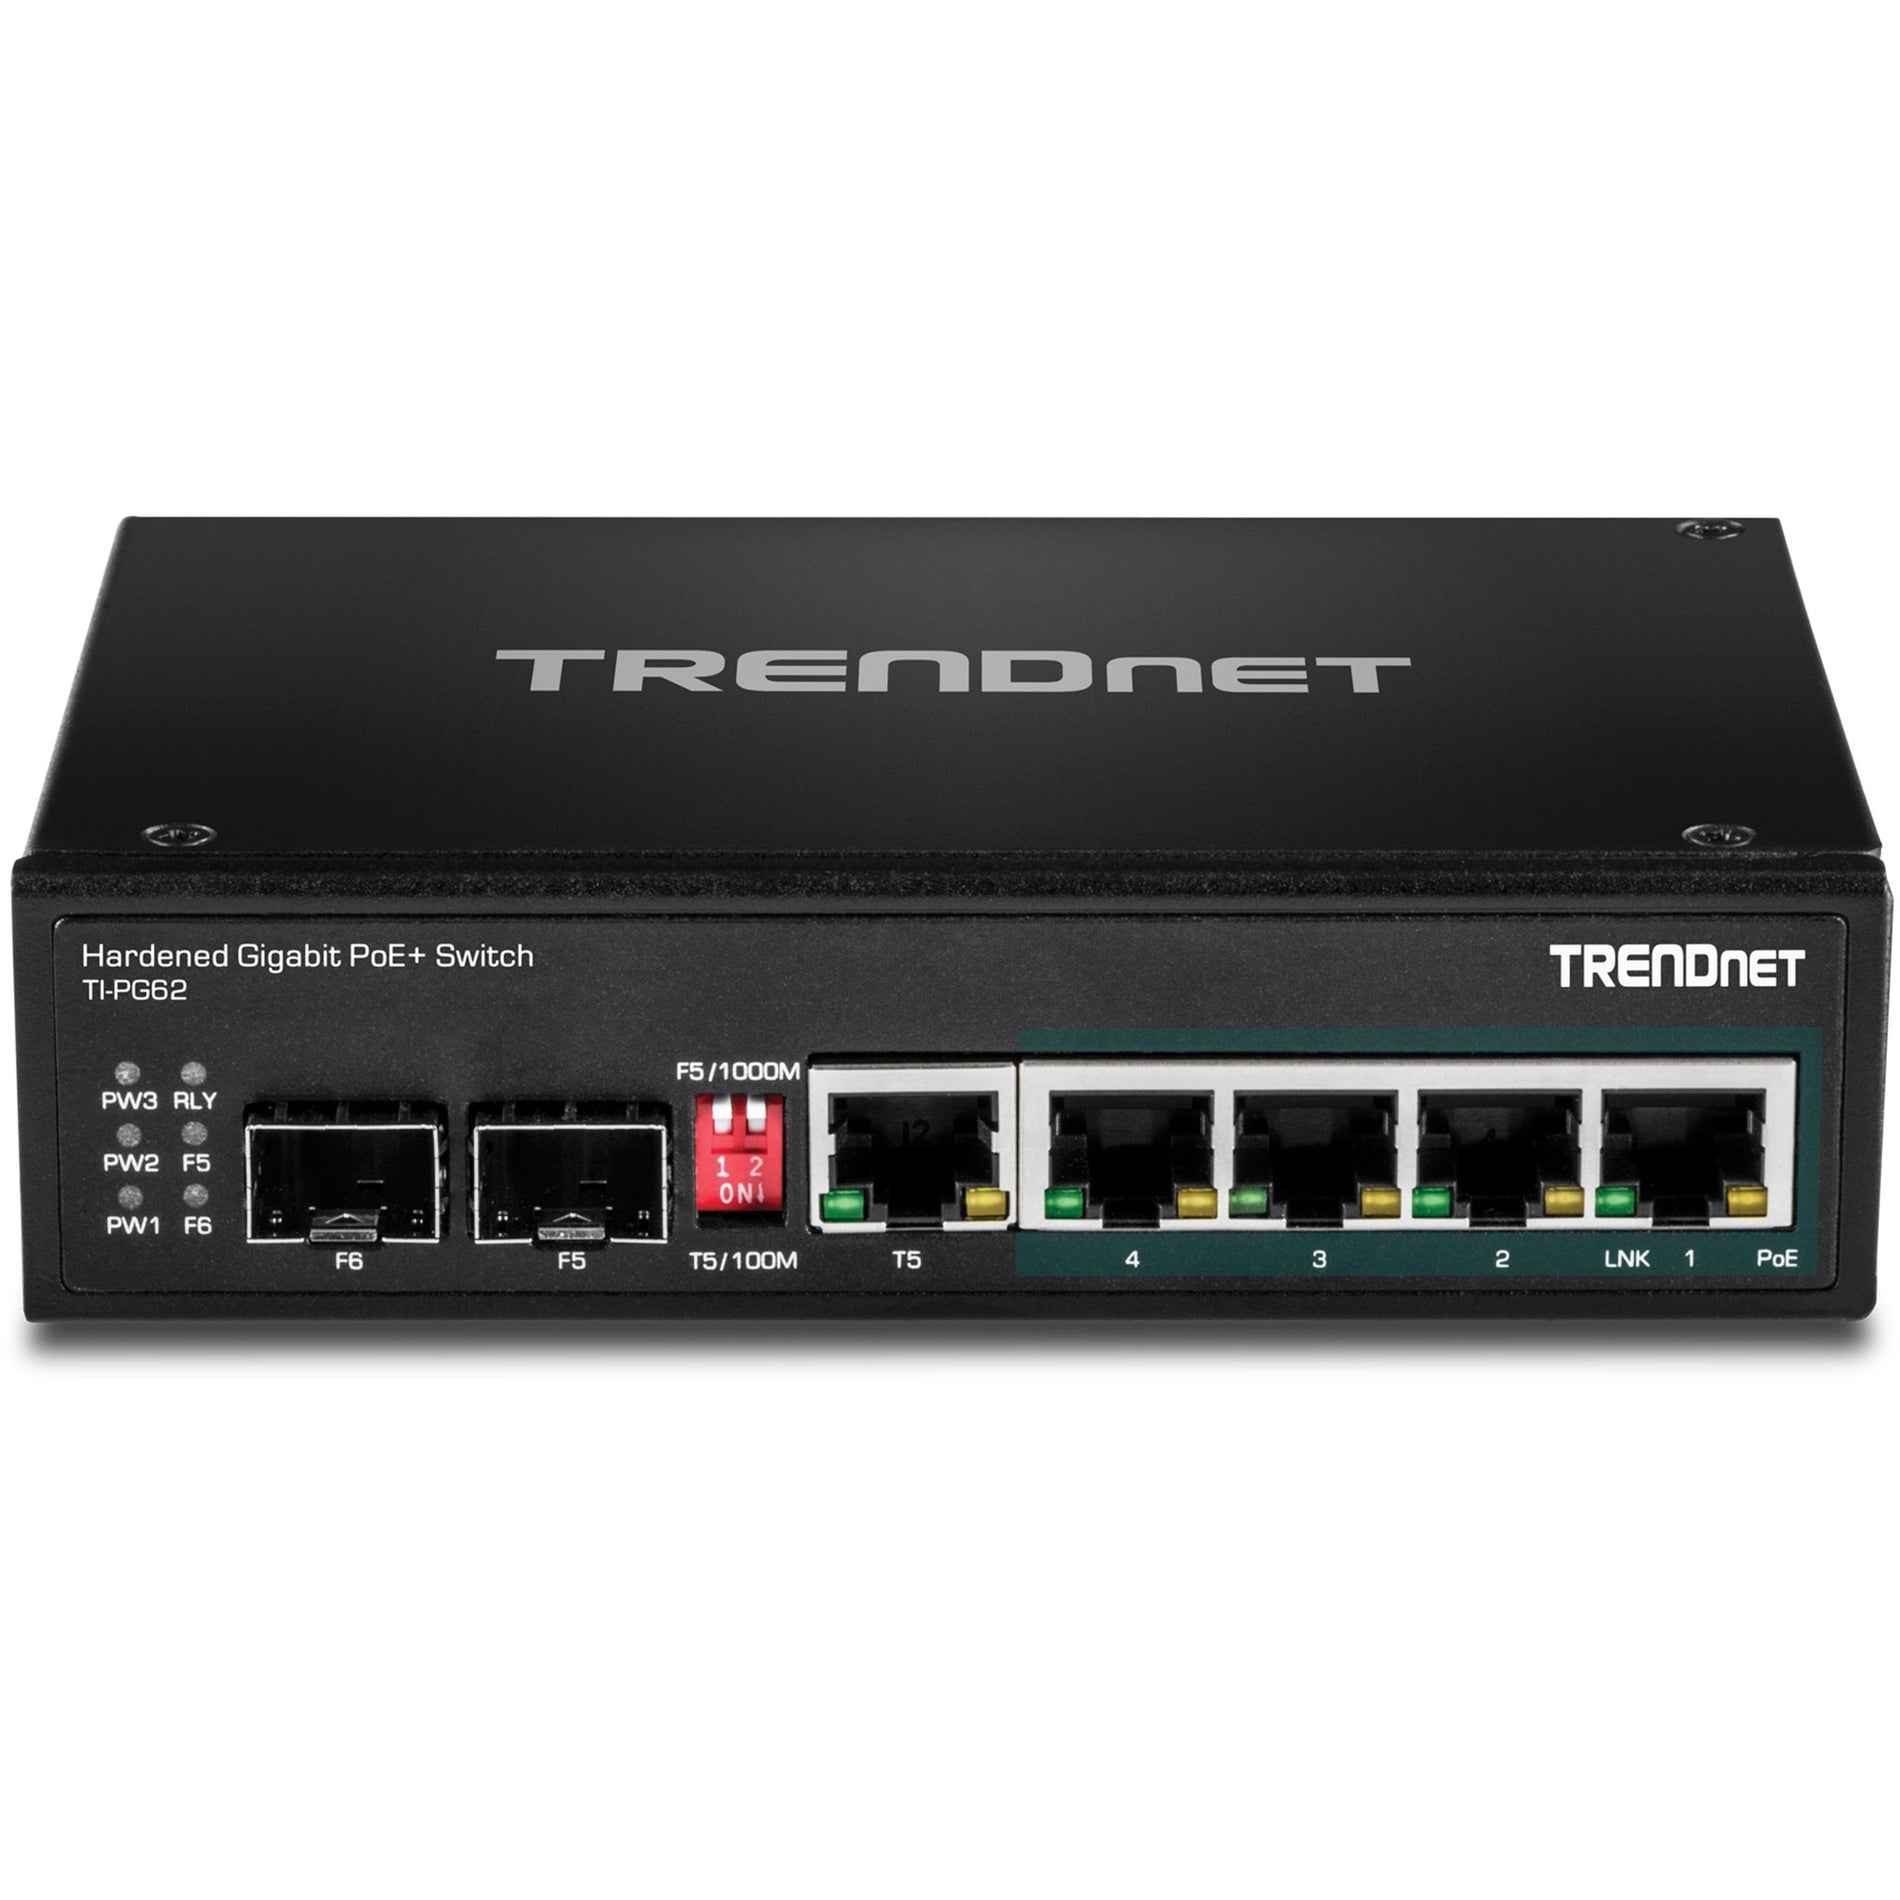 TRENDnet TI-PG62 6-ポート ハード化産業用ギガビット PoE+ DIN-レール スイッチ、4 x ギガビット PoE+ ポート、120W 電力予算 ブランド名：トレンドネット